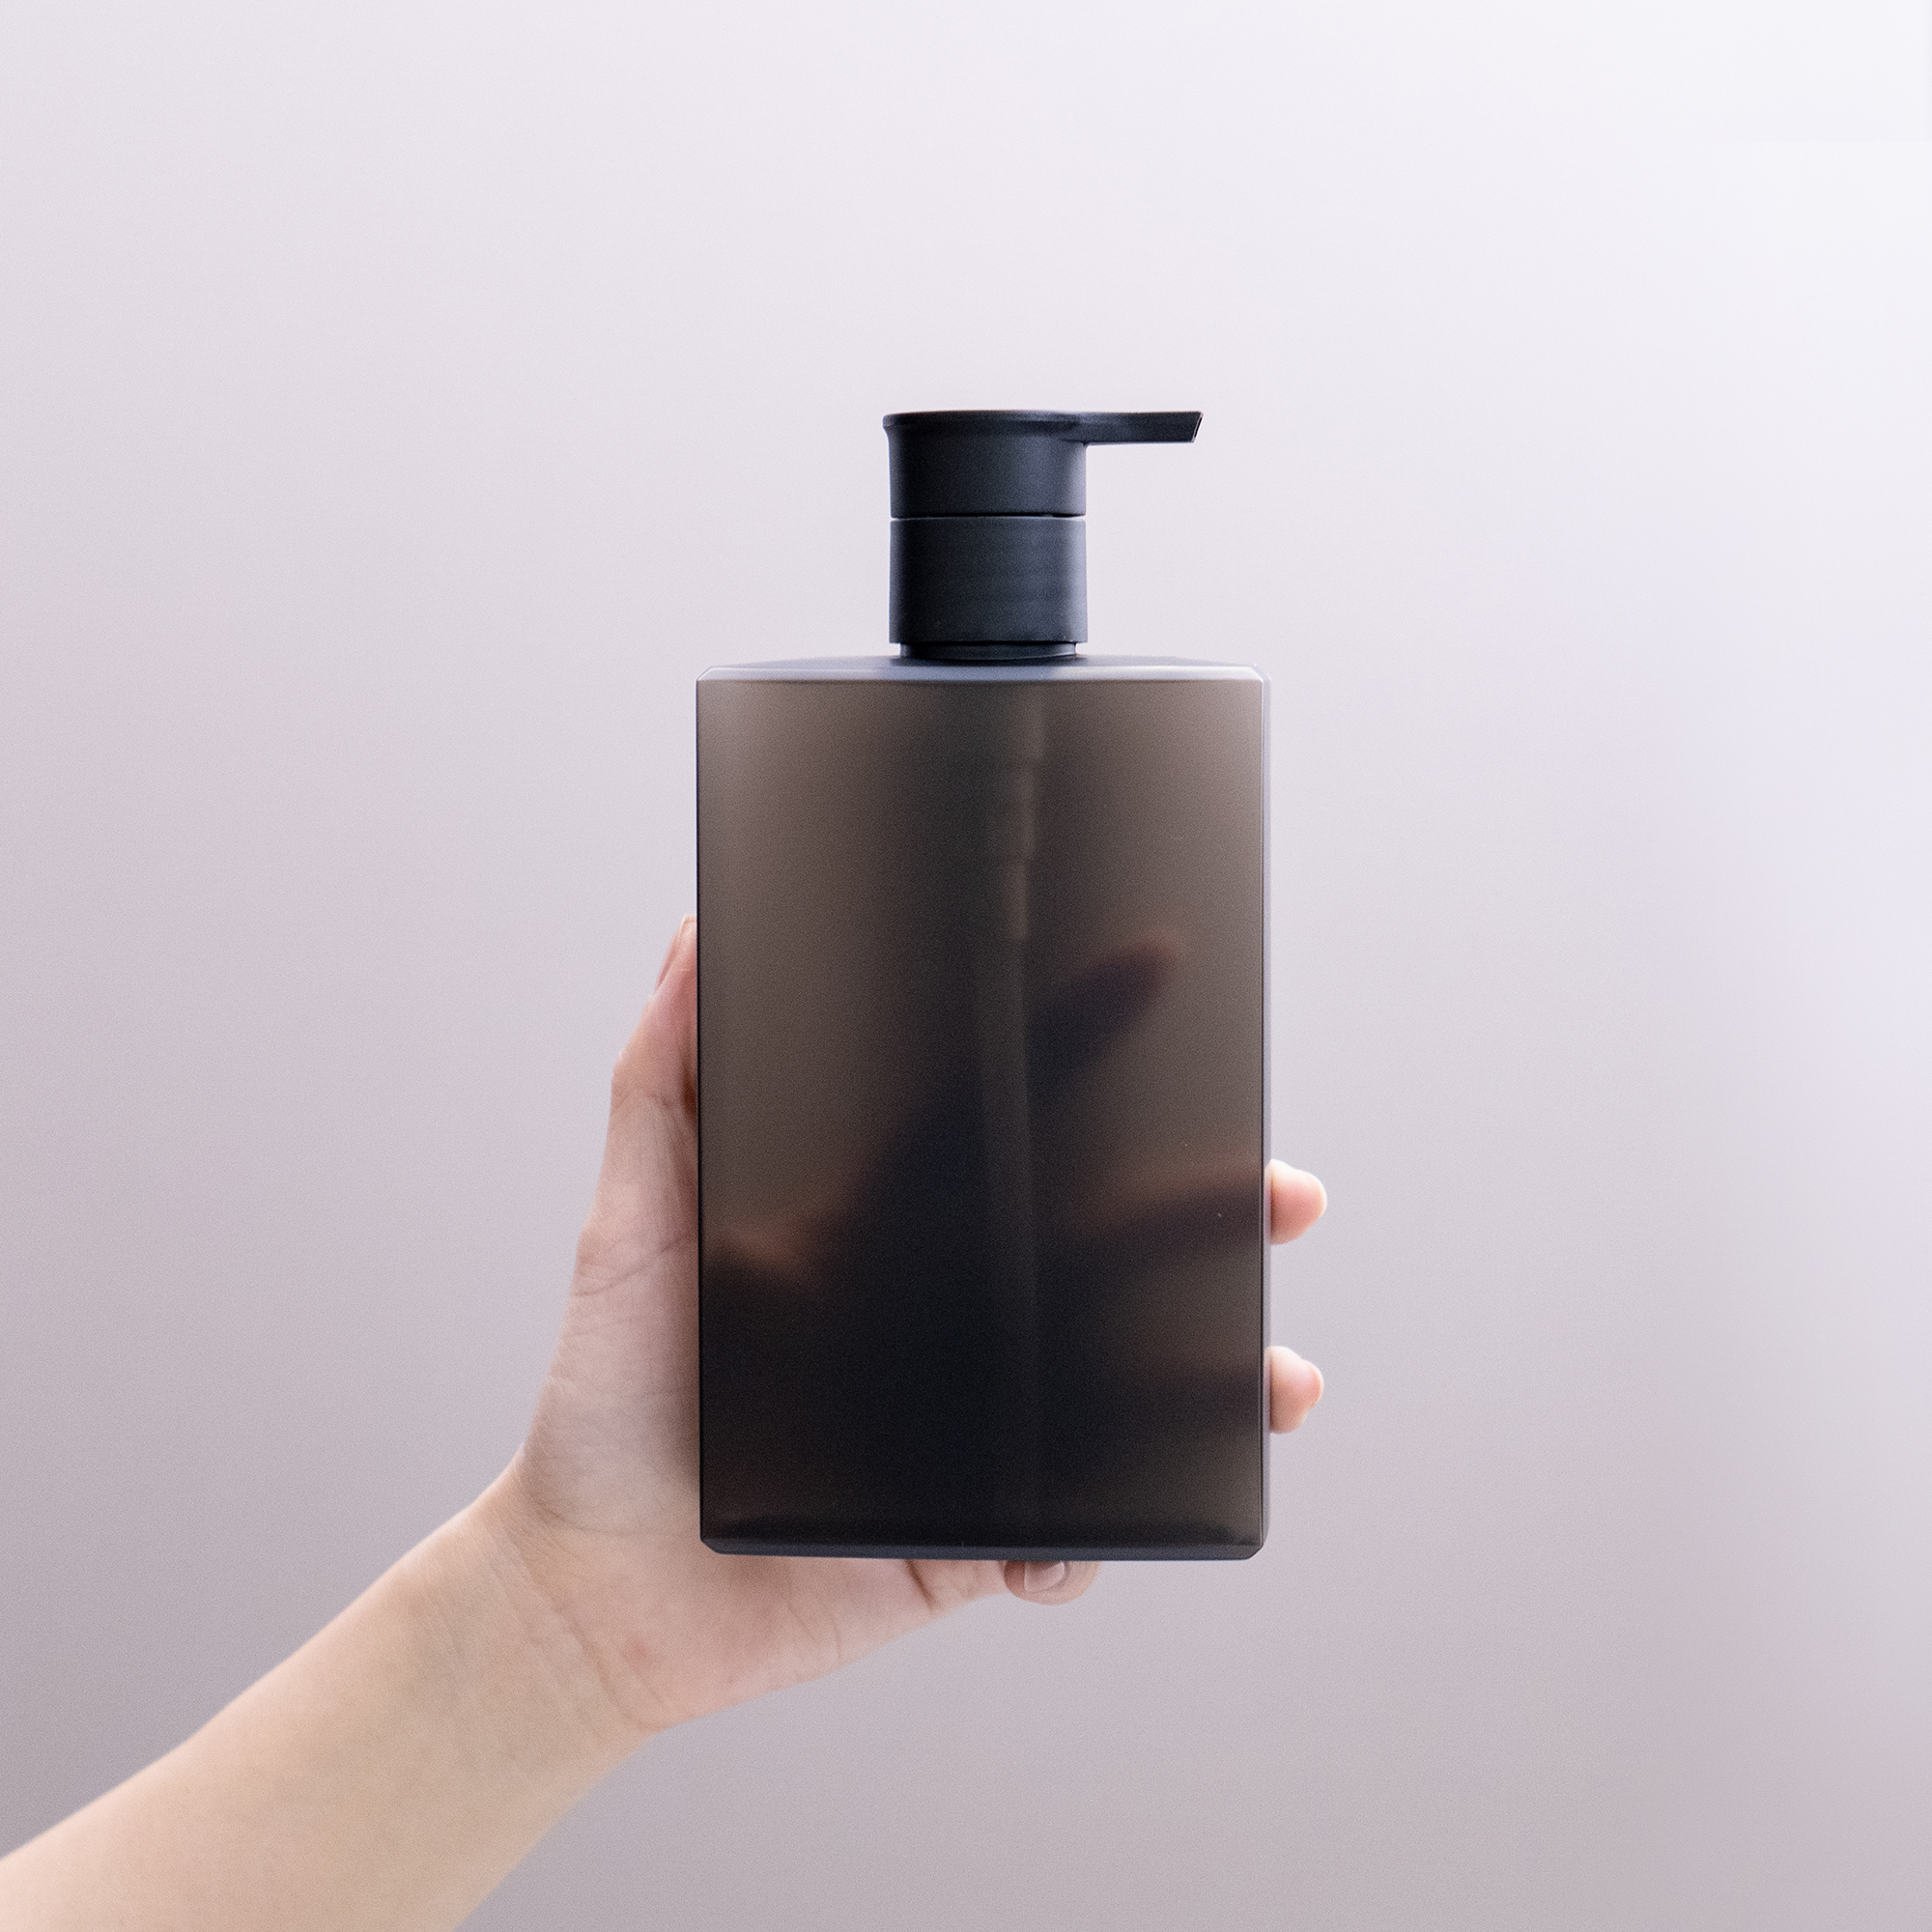 新款黑色磨砂扁平方形沐浴露洗发水分装瓶按压瓶塑料空瓶子男士